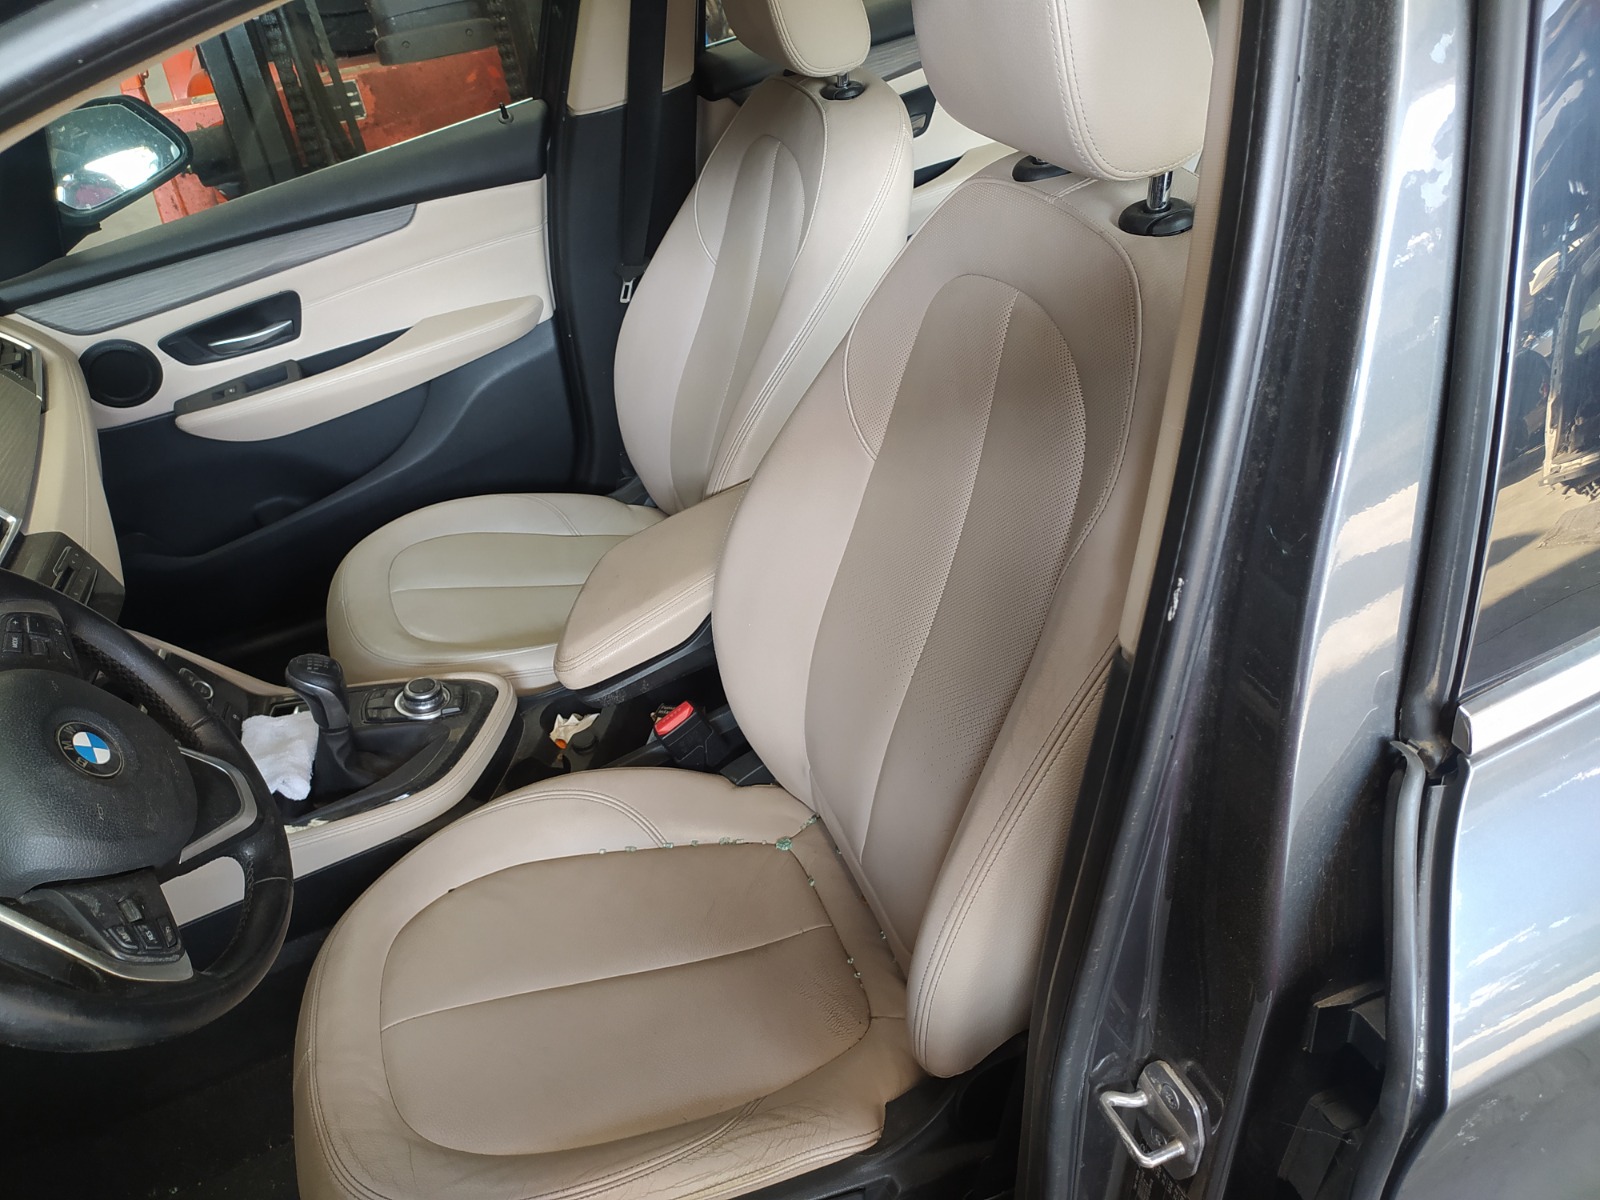 Juego de airbag BMW 214d año 2015 completo